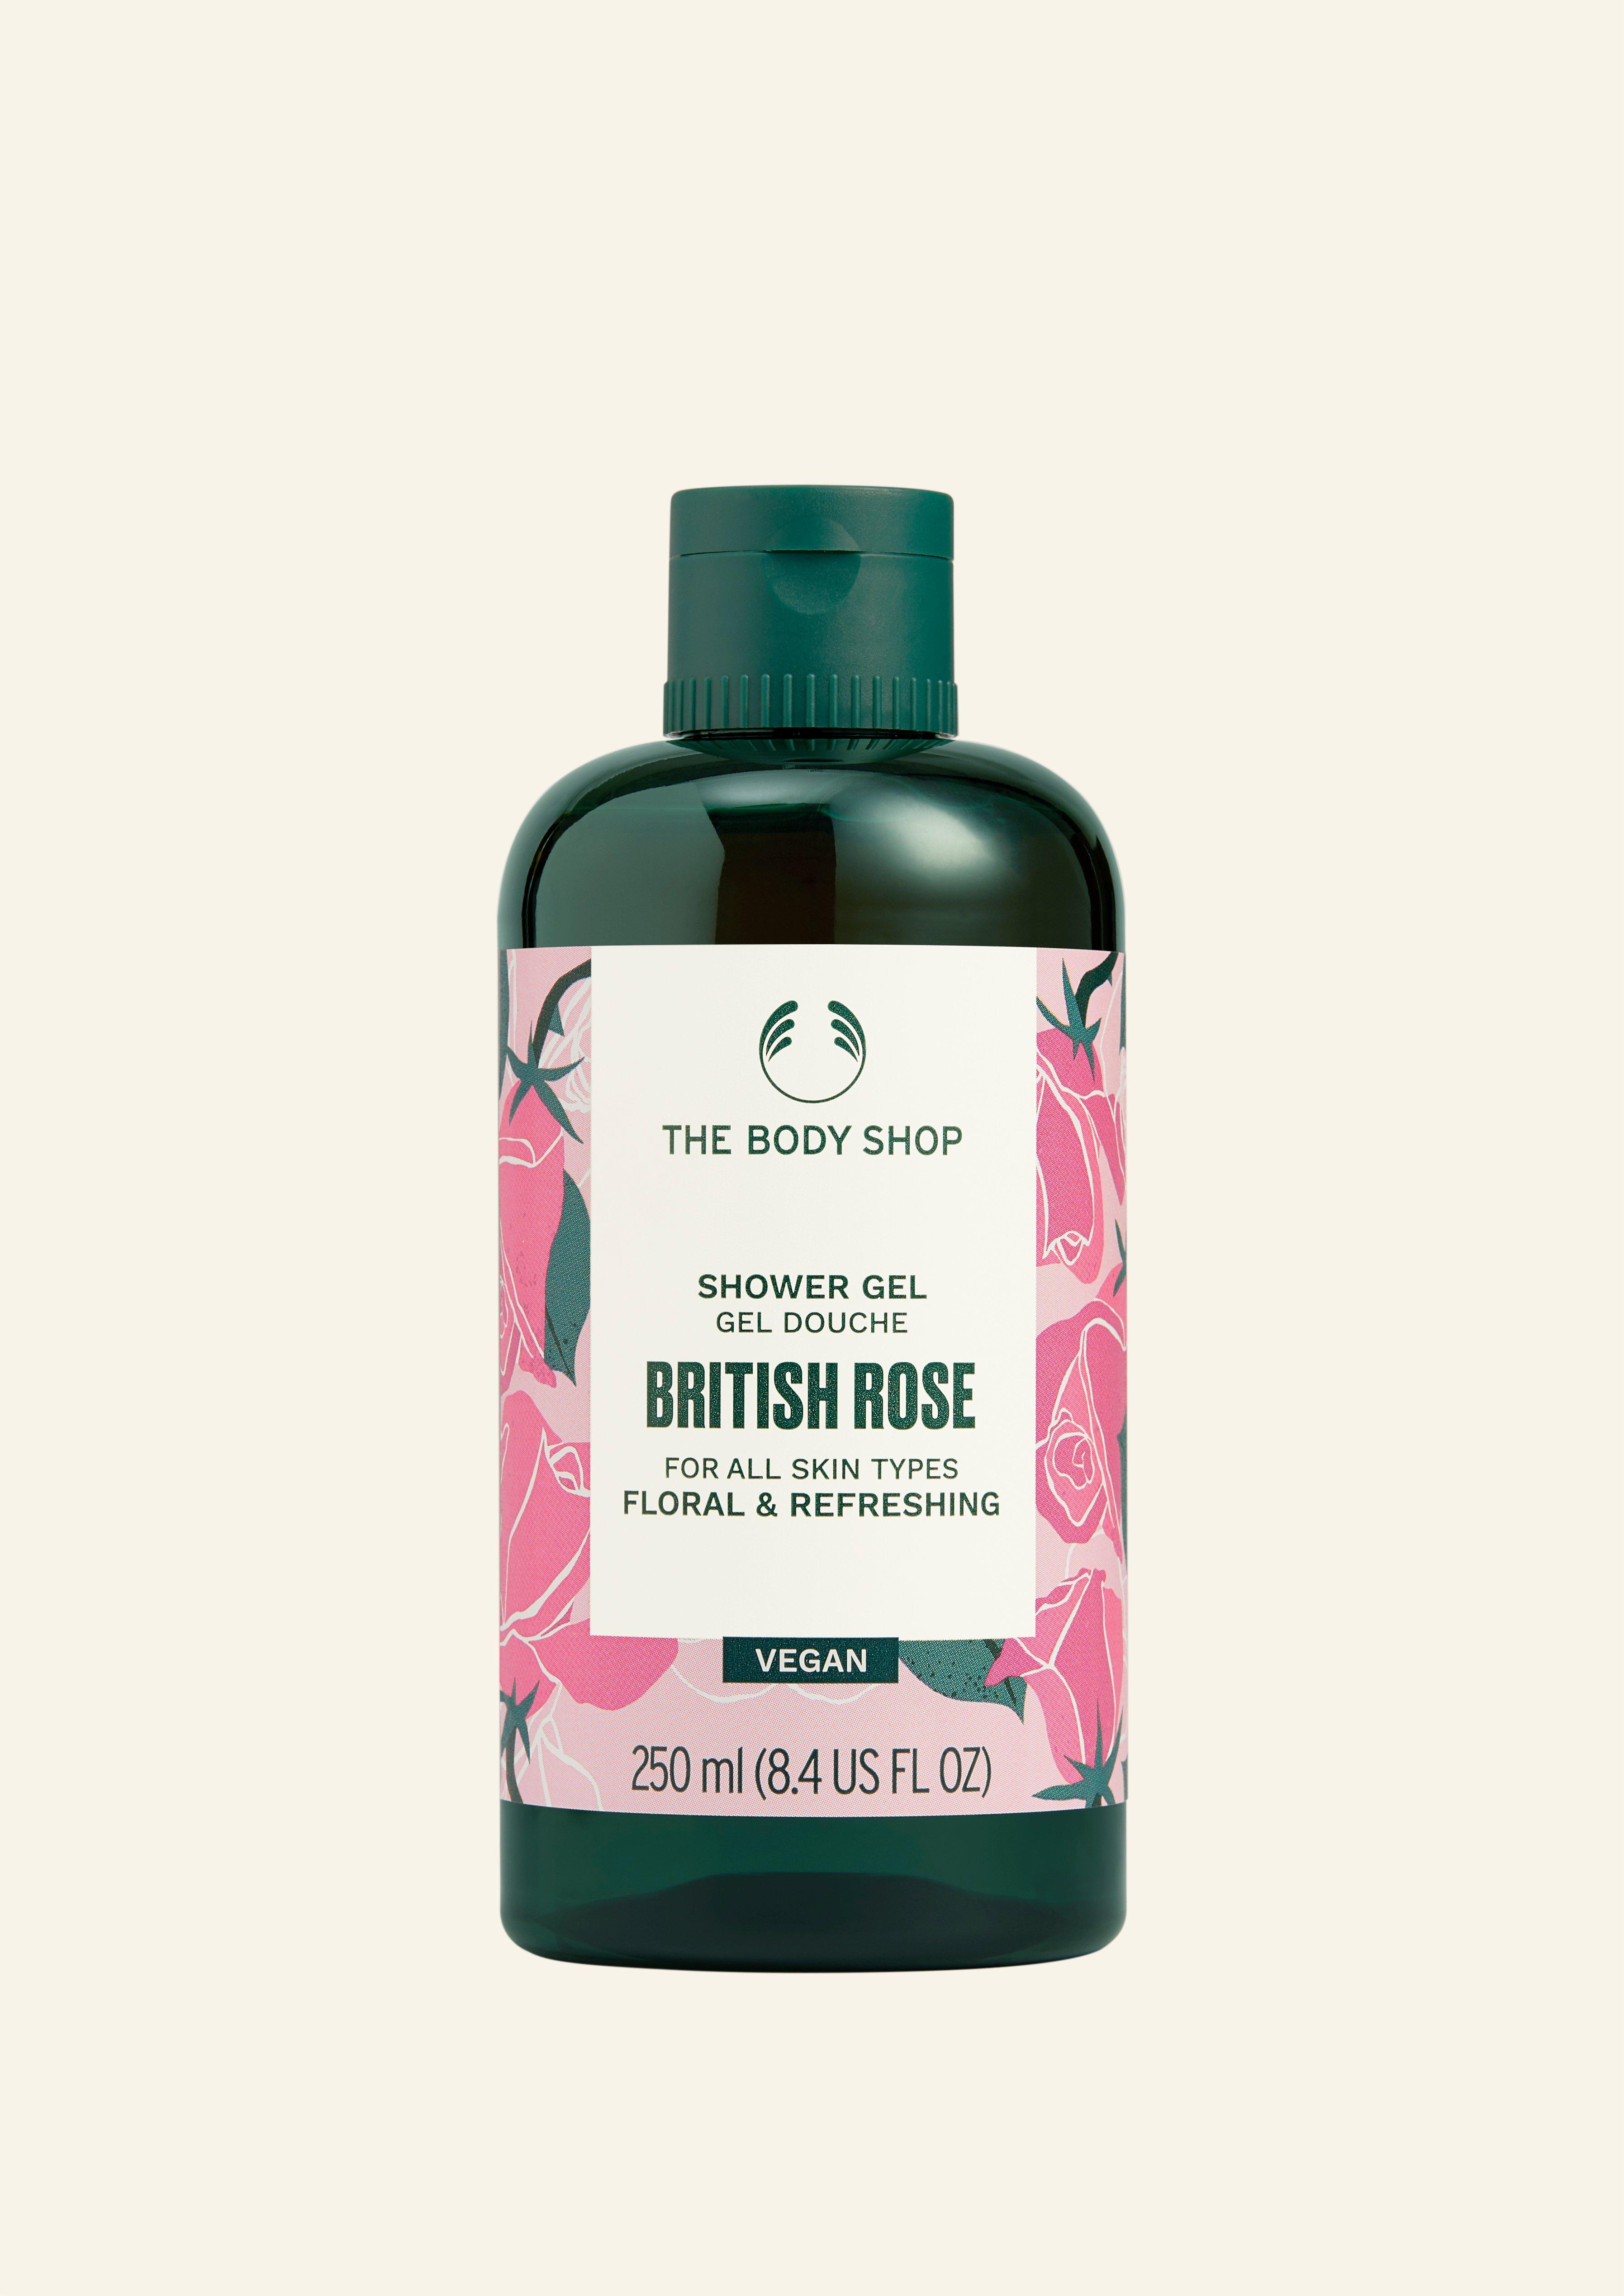 The Body Shop - British Rose Eau de Toilette Vegan (100ml)